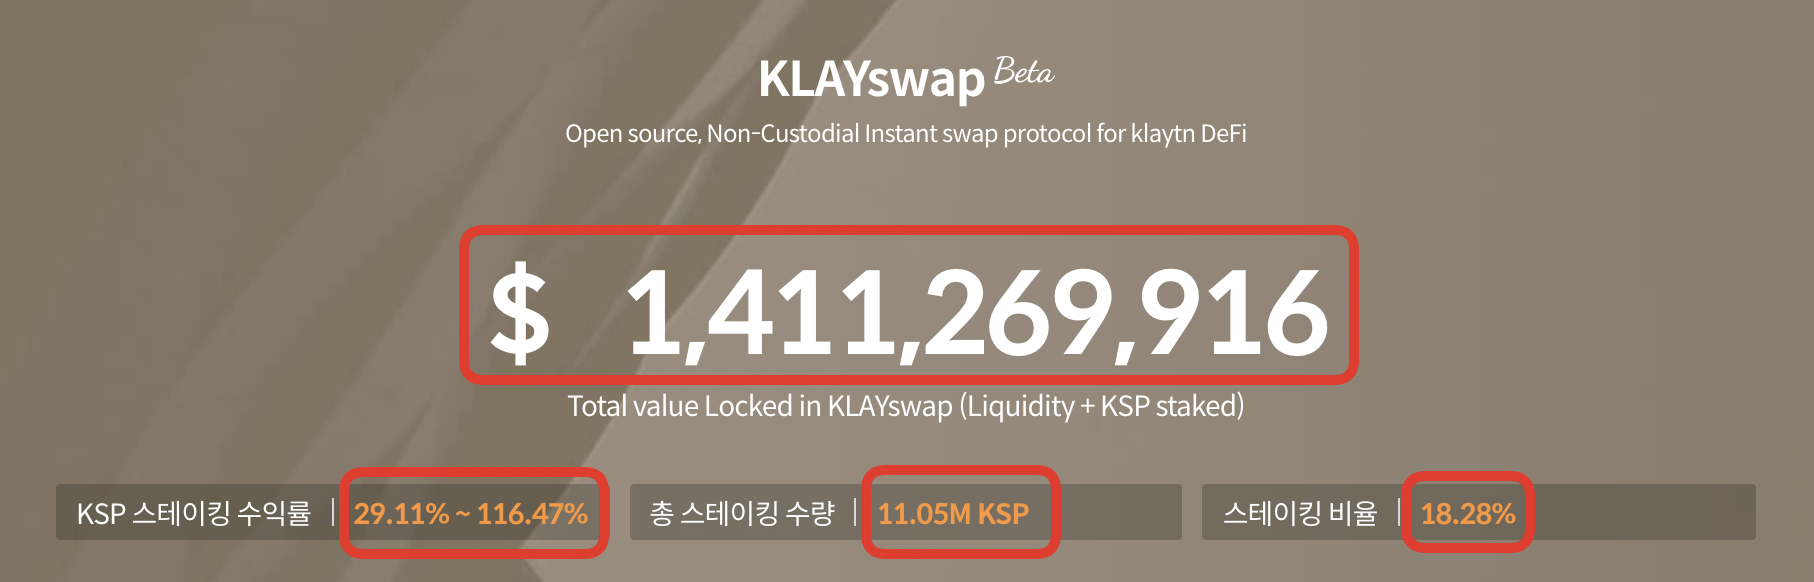 klayswap.com